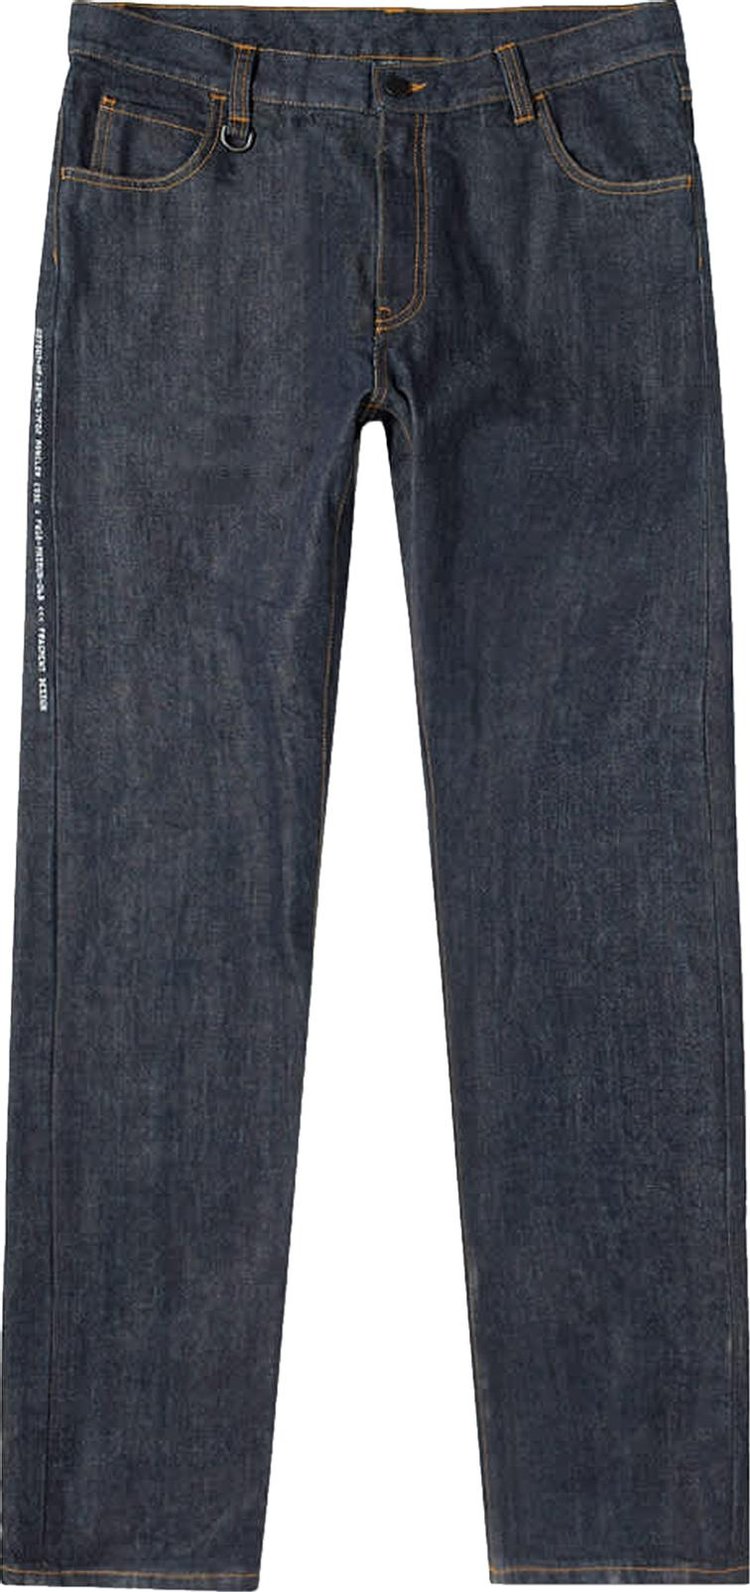 Moncler Genius x Fragment Hiroshi Fujiwara Jeans 'Raw Indigo'